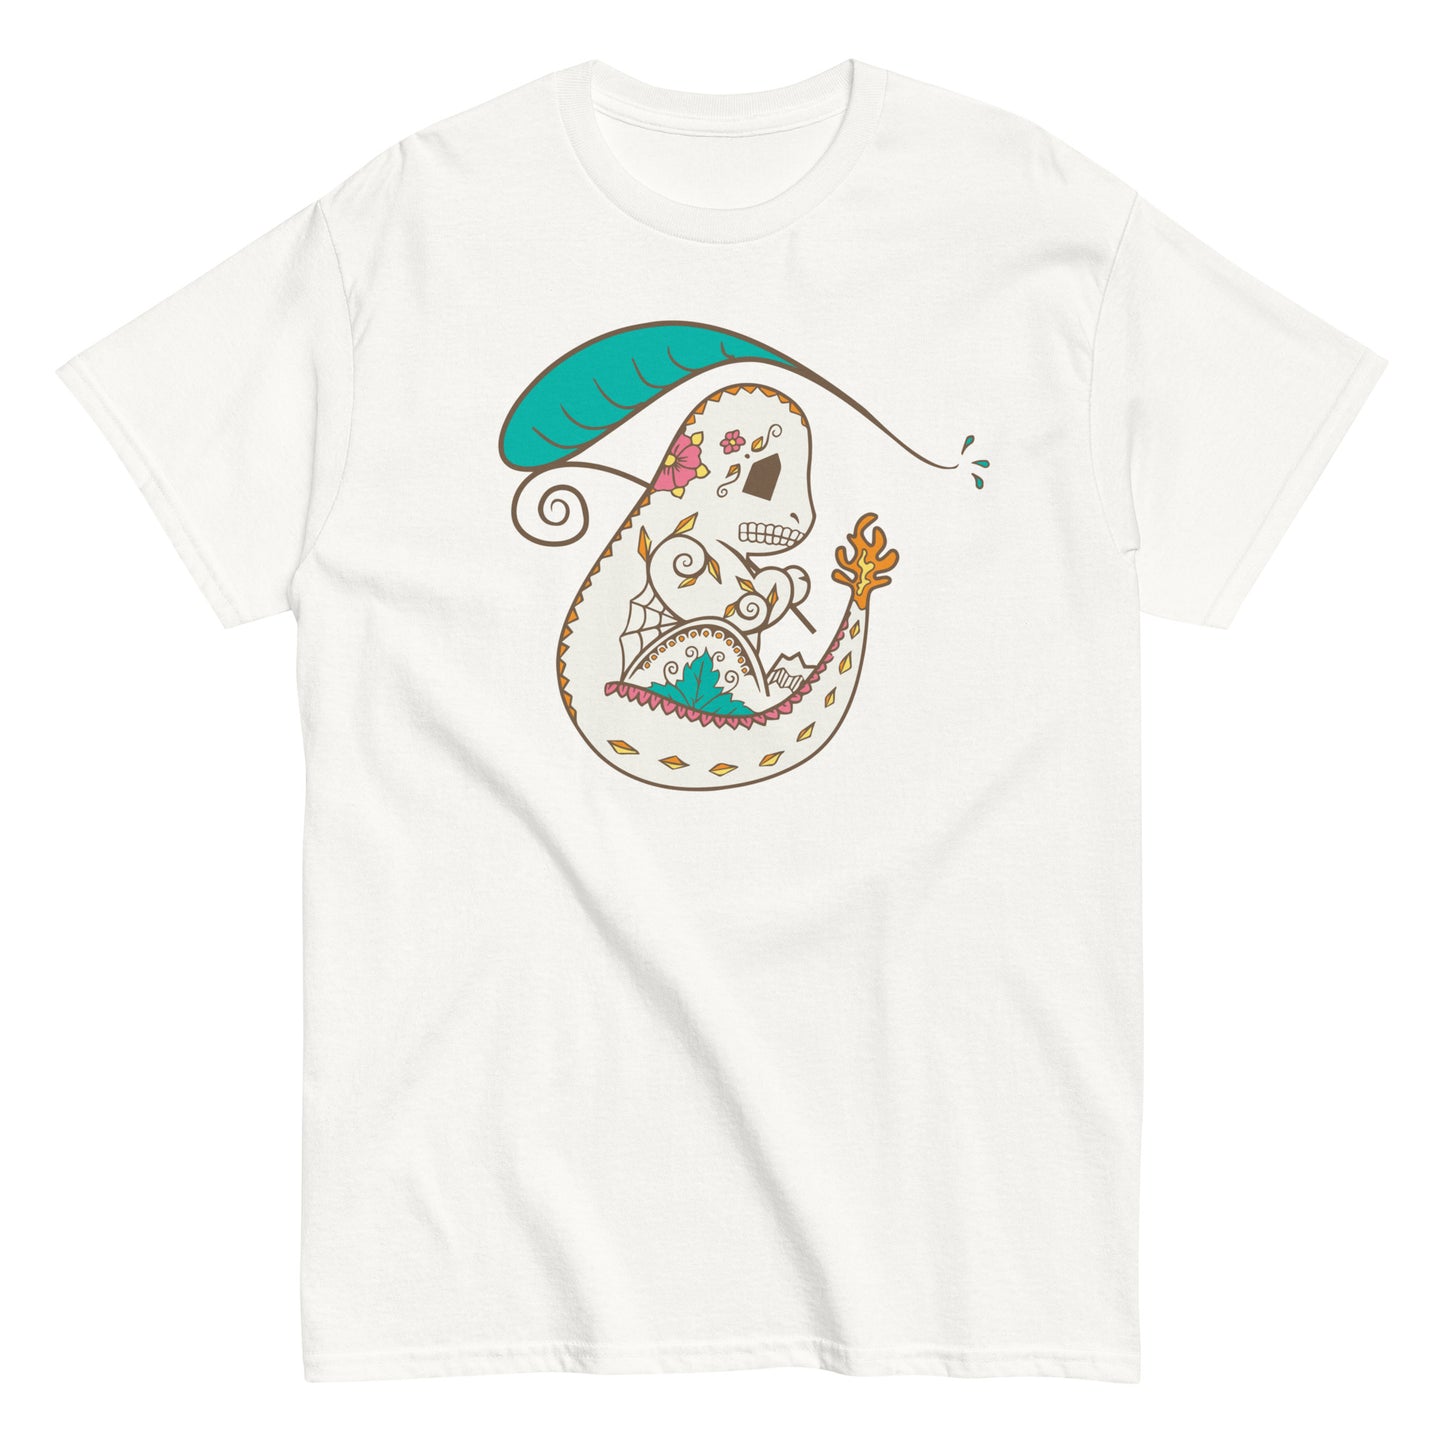 Charmander - Pokemon PopMuertos Sugar Skull T-Shirt